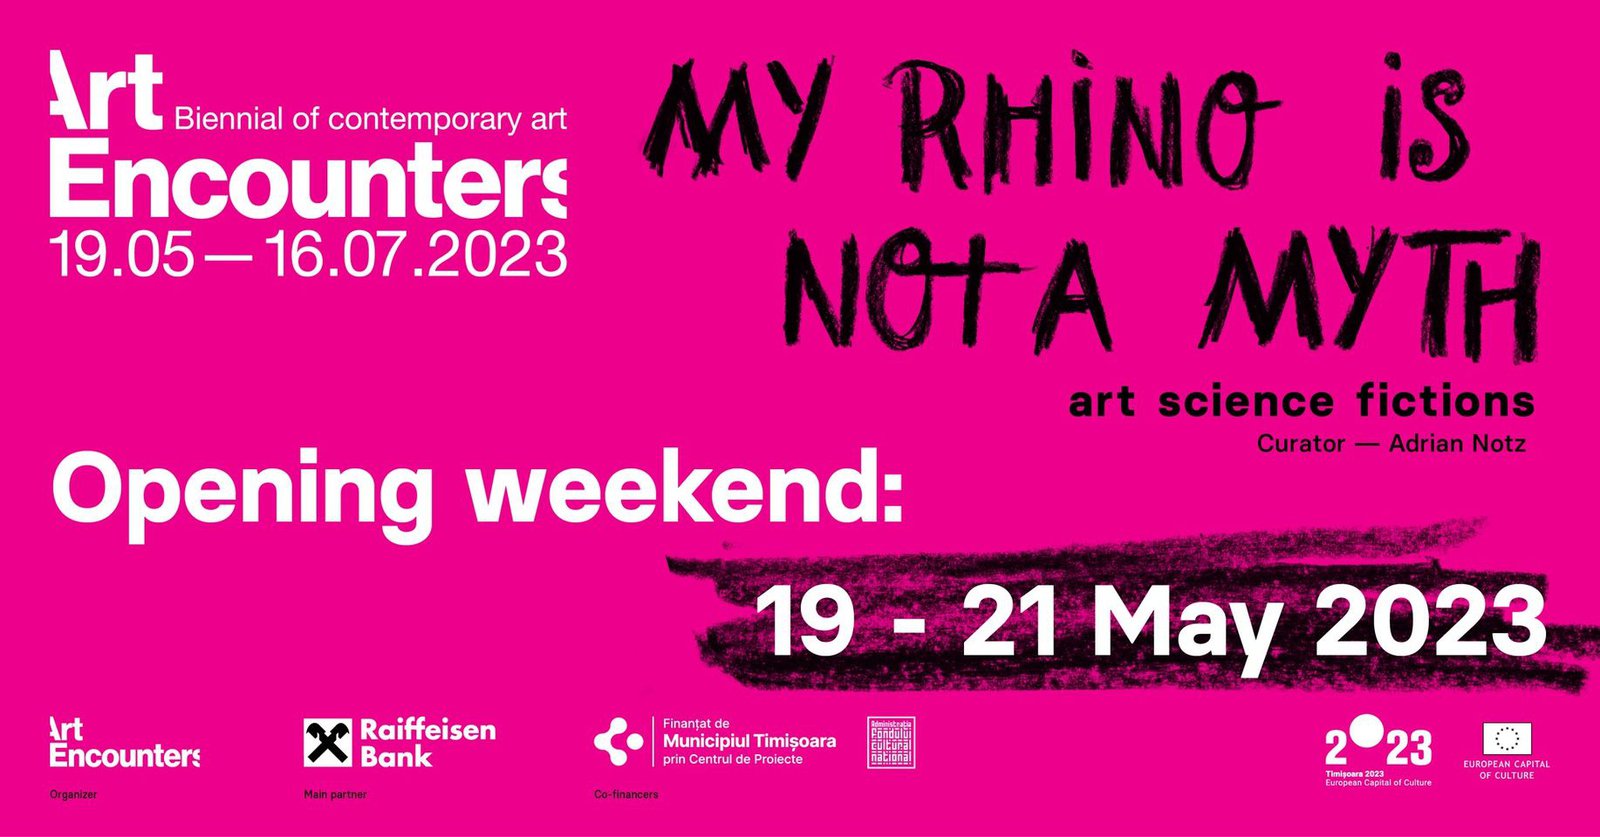 Art Encounters Biennial 2023: Opening Weekend, May 19, 2023